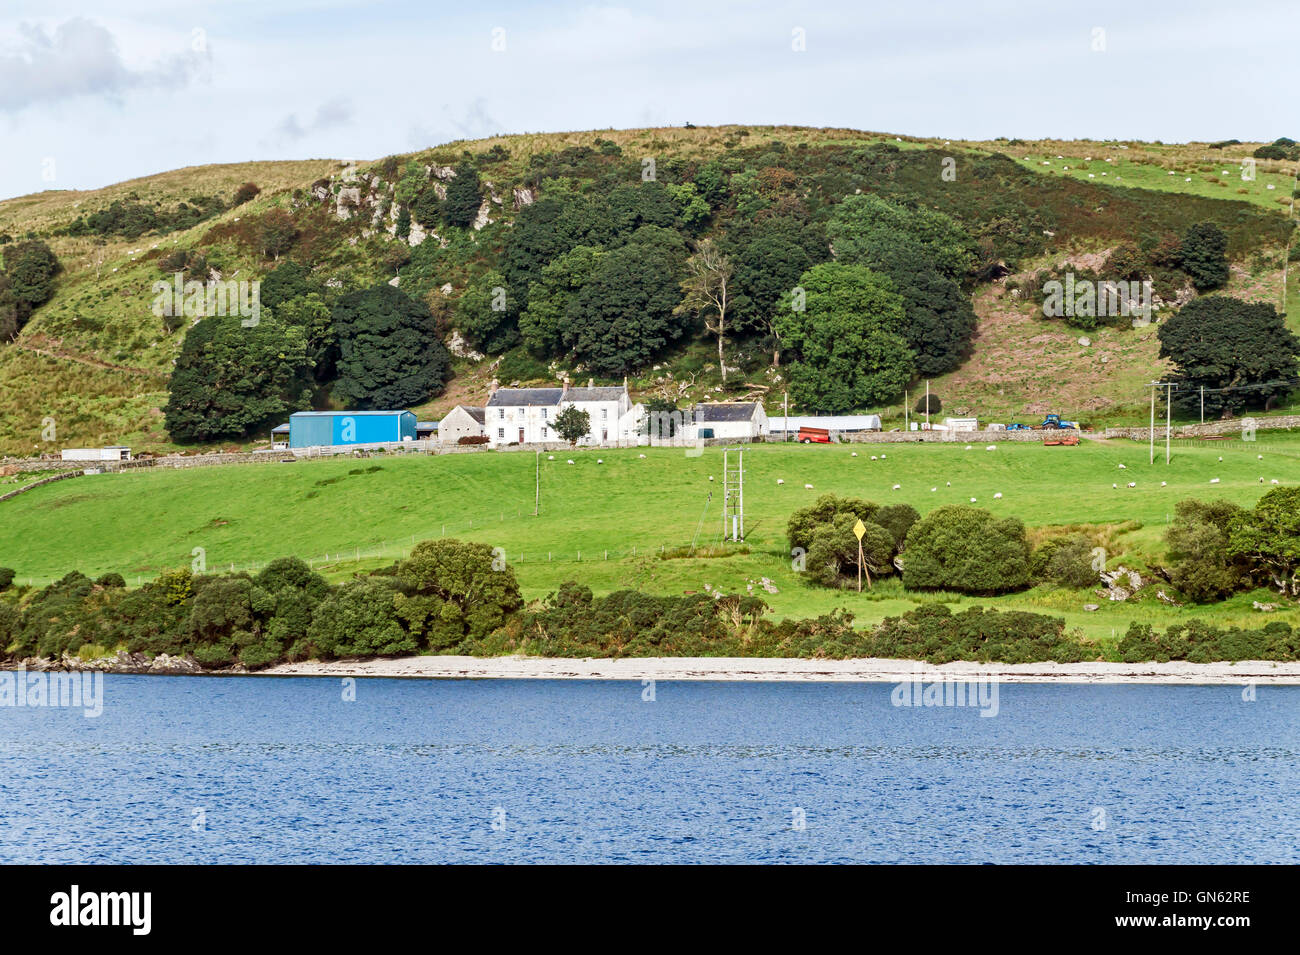 Un hill farm à la rive nord de l'île de Bute en Ecosse Argyll and Bute Banque D'Images